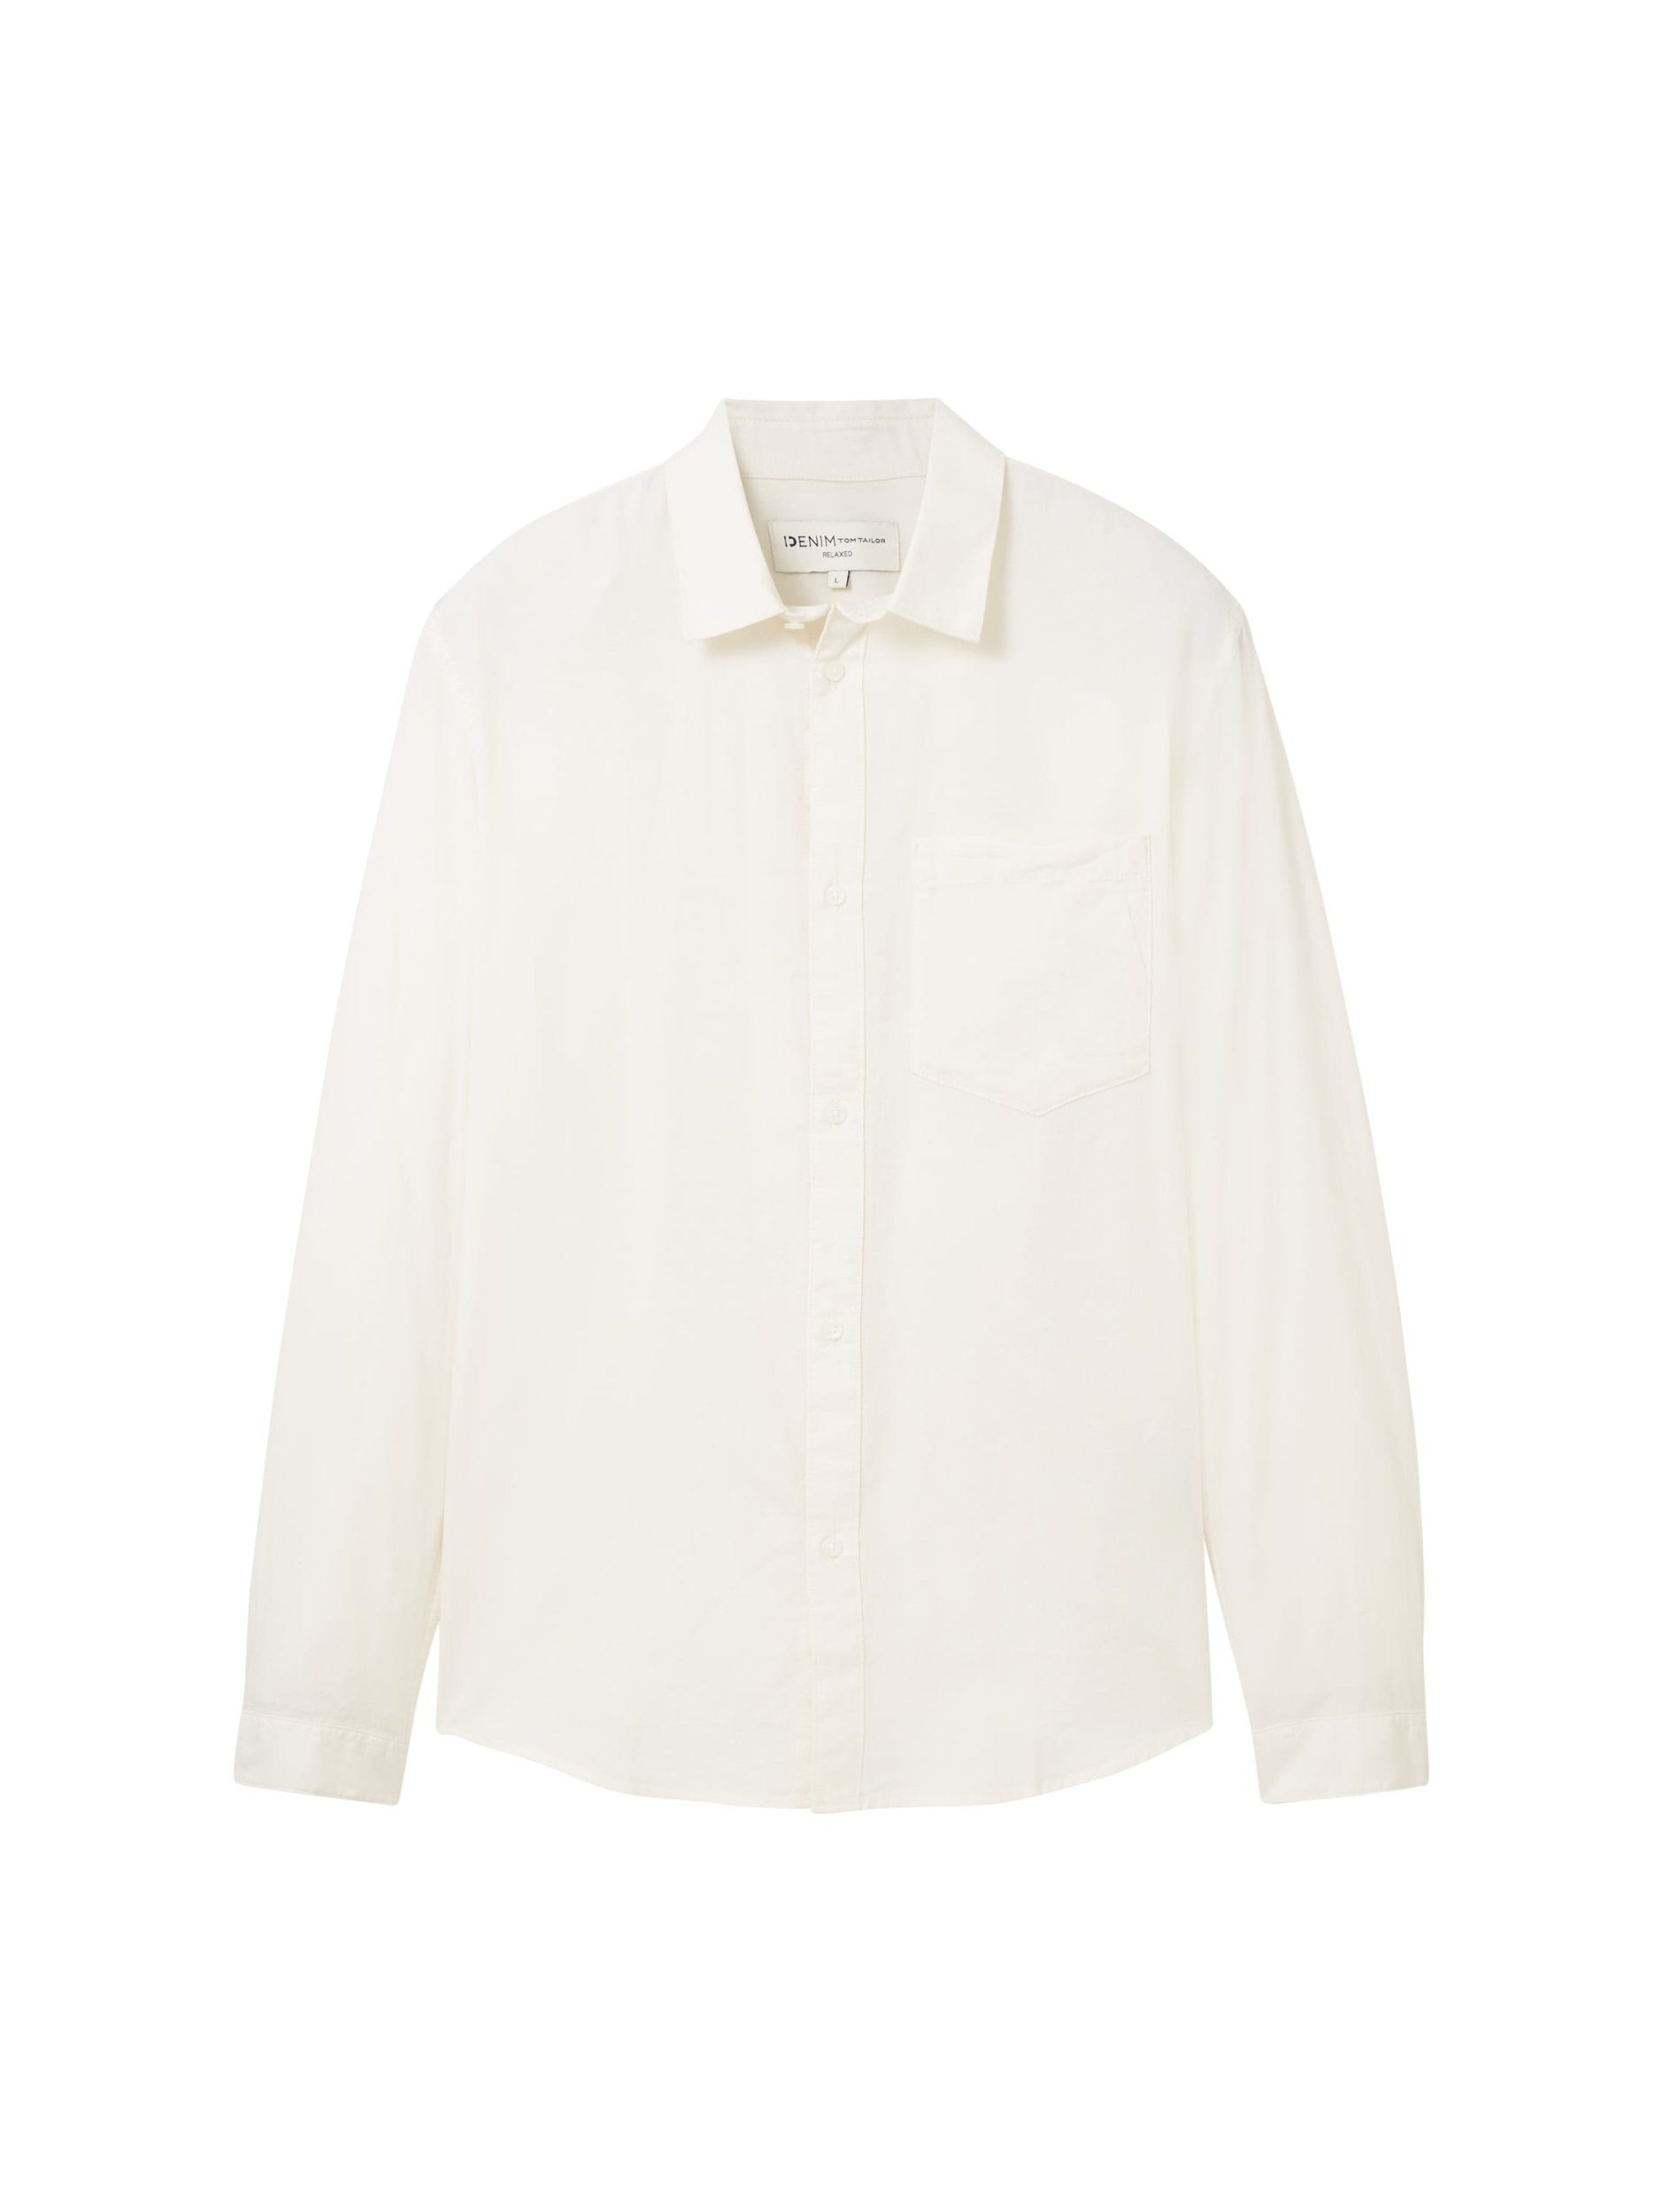 TOM TAILOR Denim Langarmhemd shirt oxford Wool White